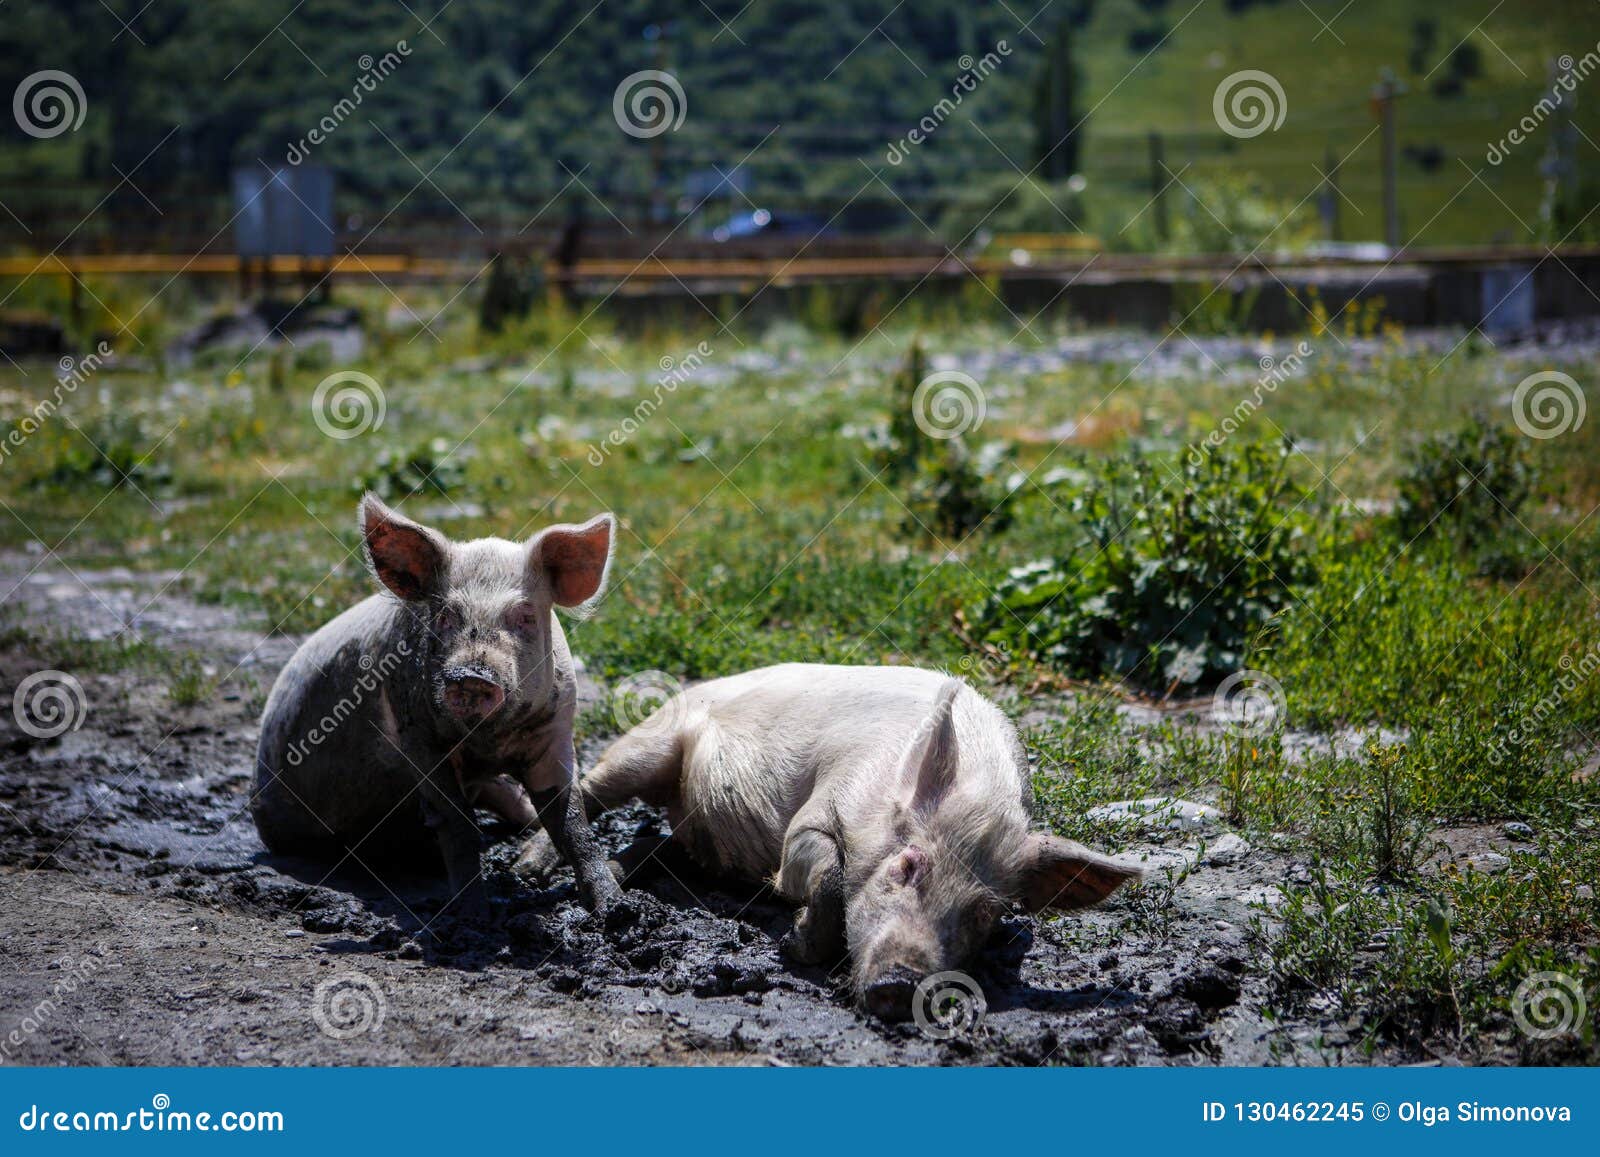 Свиньи в селе